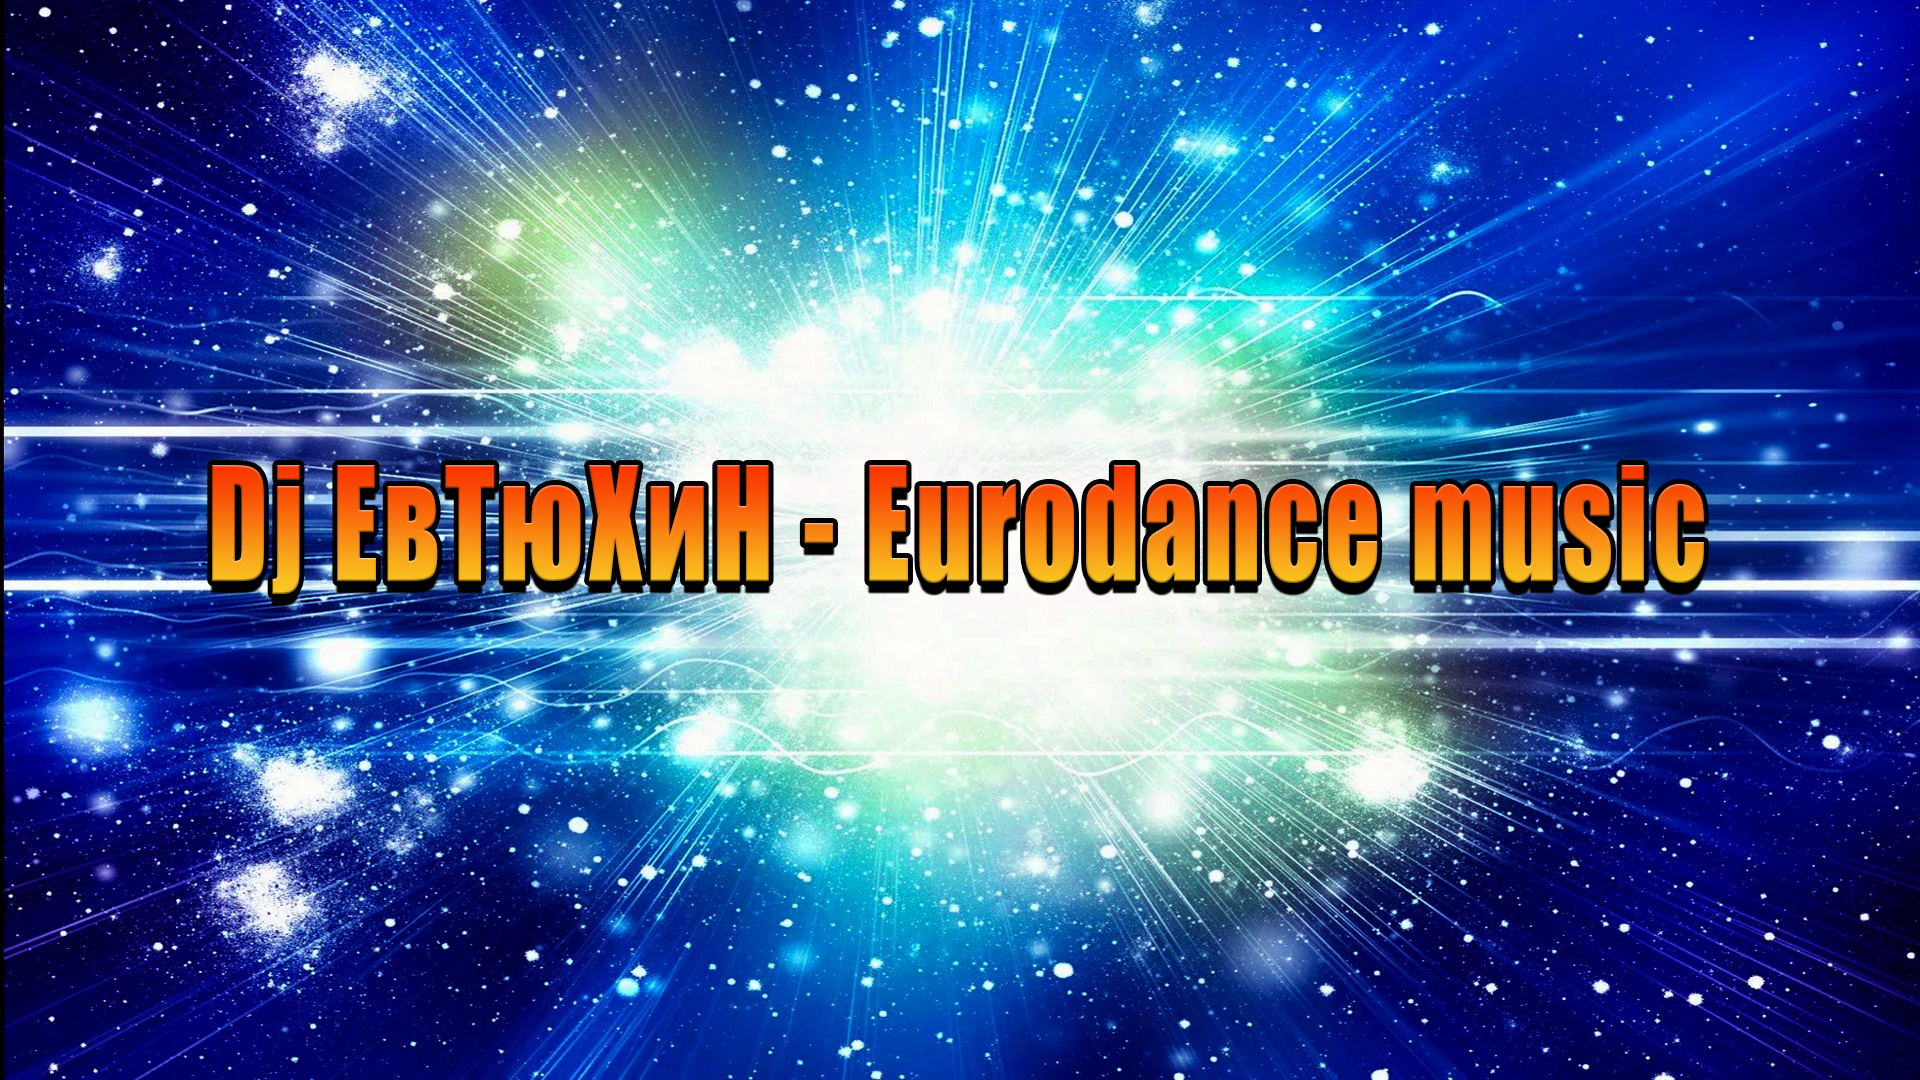 Dj ЕвТюХиН - Eurodance music 🎧 💥